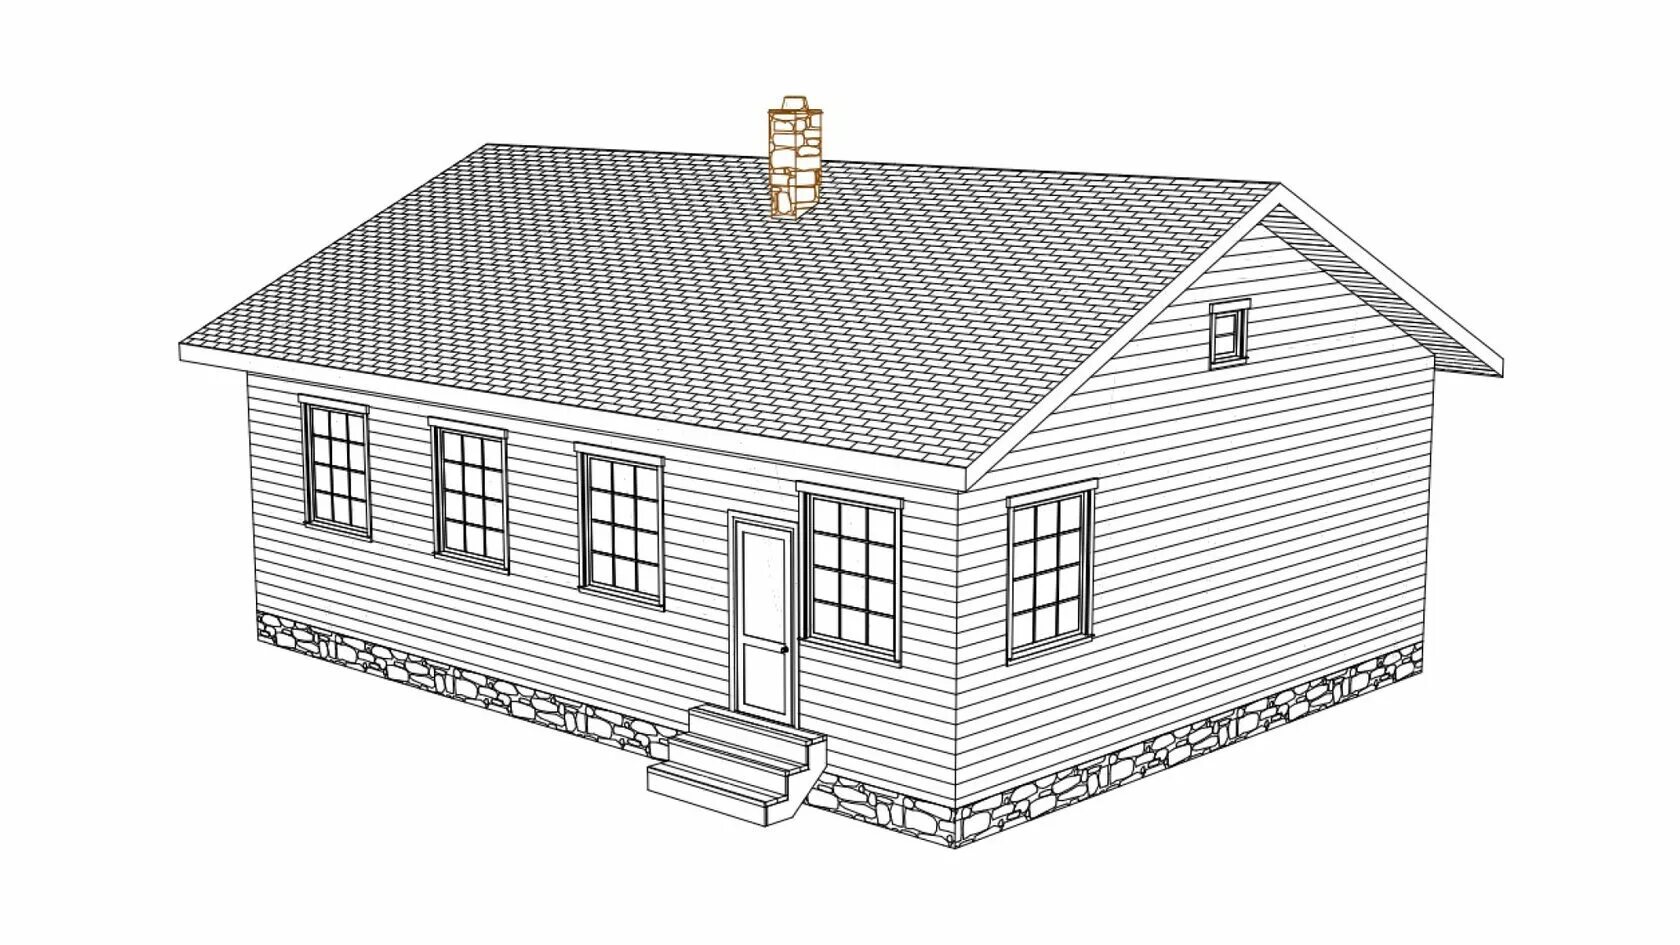 12 17 проект. 17сч12.00-ОС-9.0Х12.0-108. Каркасный одноэтажный дом проект 3д. Фасад дома 3д модель. Домокомплект из полистиролбетона.